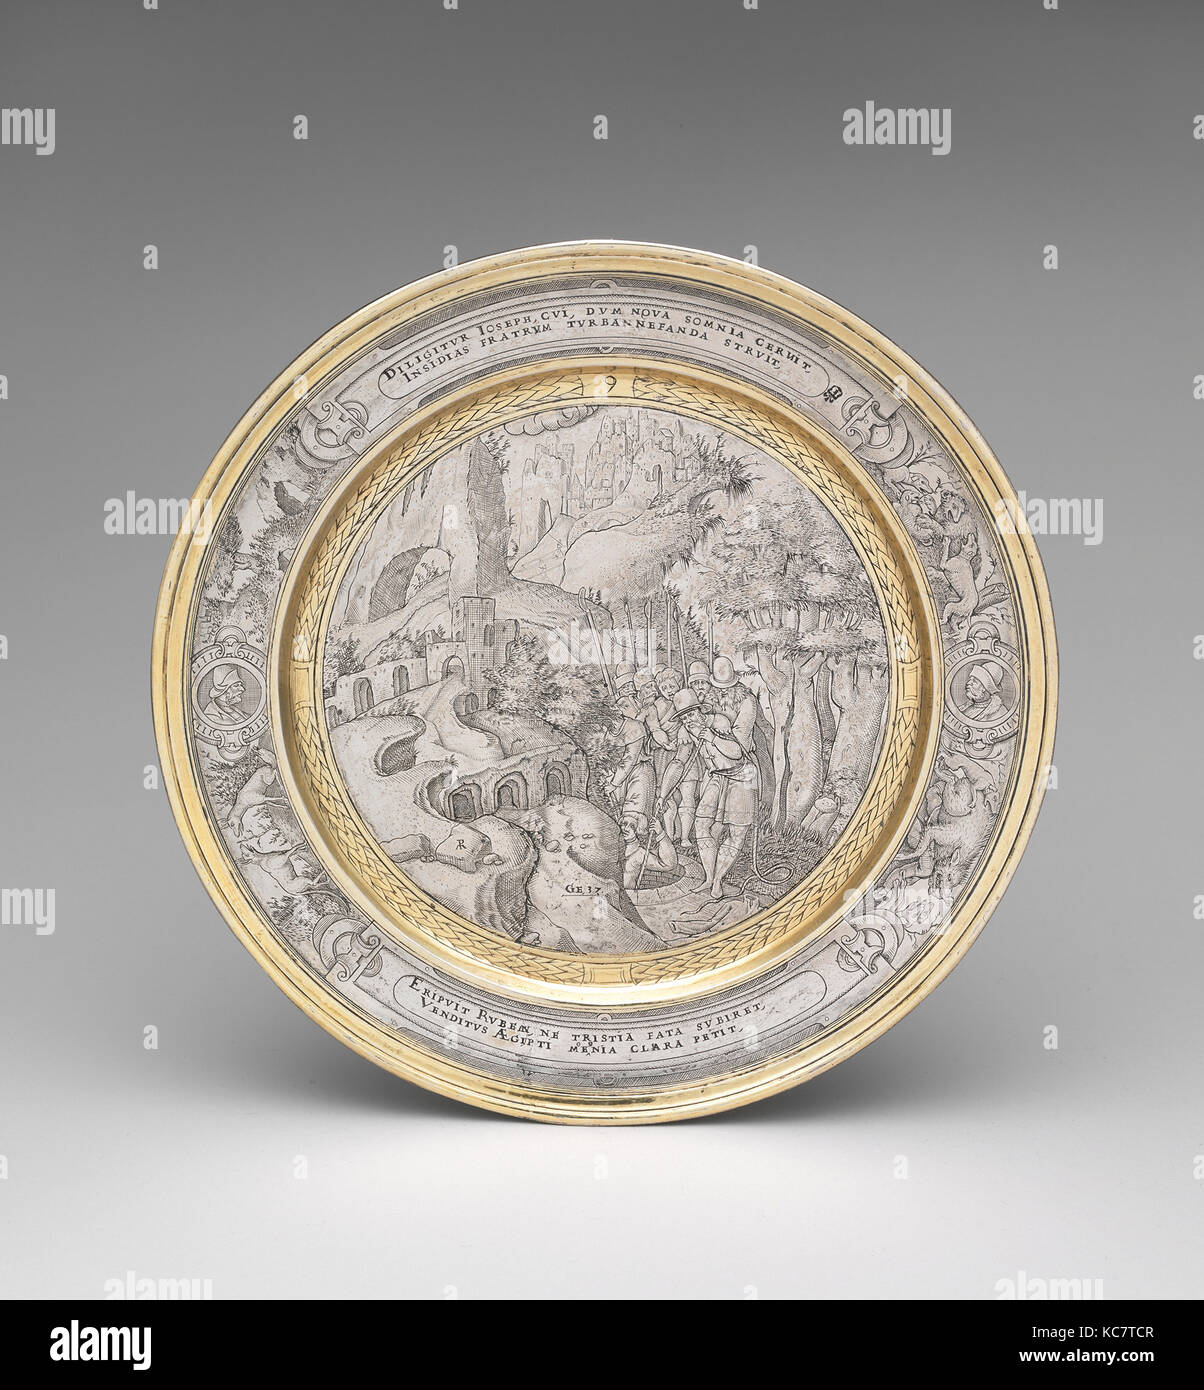 Joseph descendue dans la fosse, ca. En 1567, probablement, d'argent, doré, dans l'ensemble des colis (confirmé) : 5/8 x 7 3/4 in., 7 oz. 17 tpl Banque D'Images